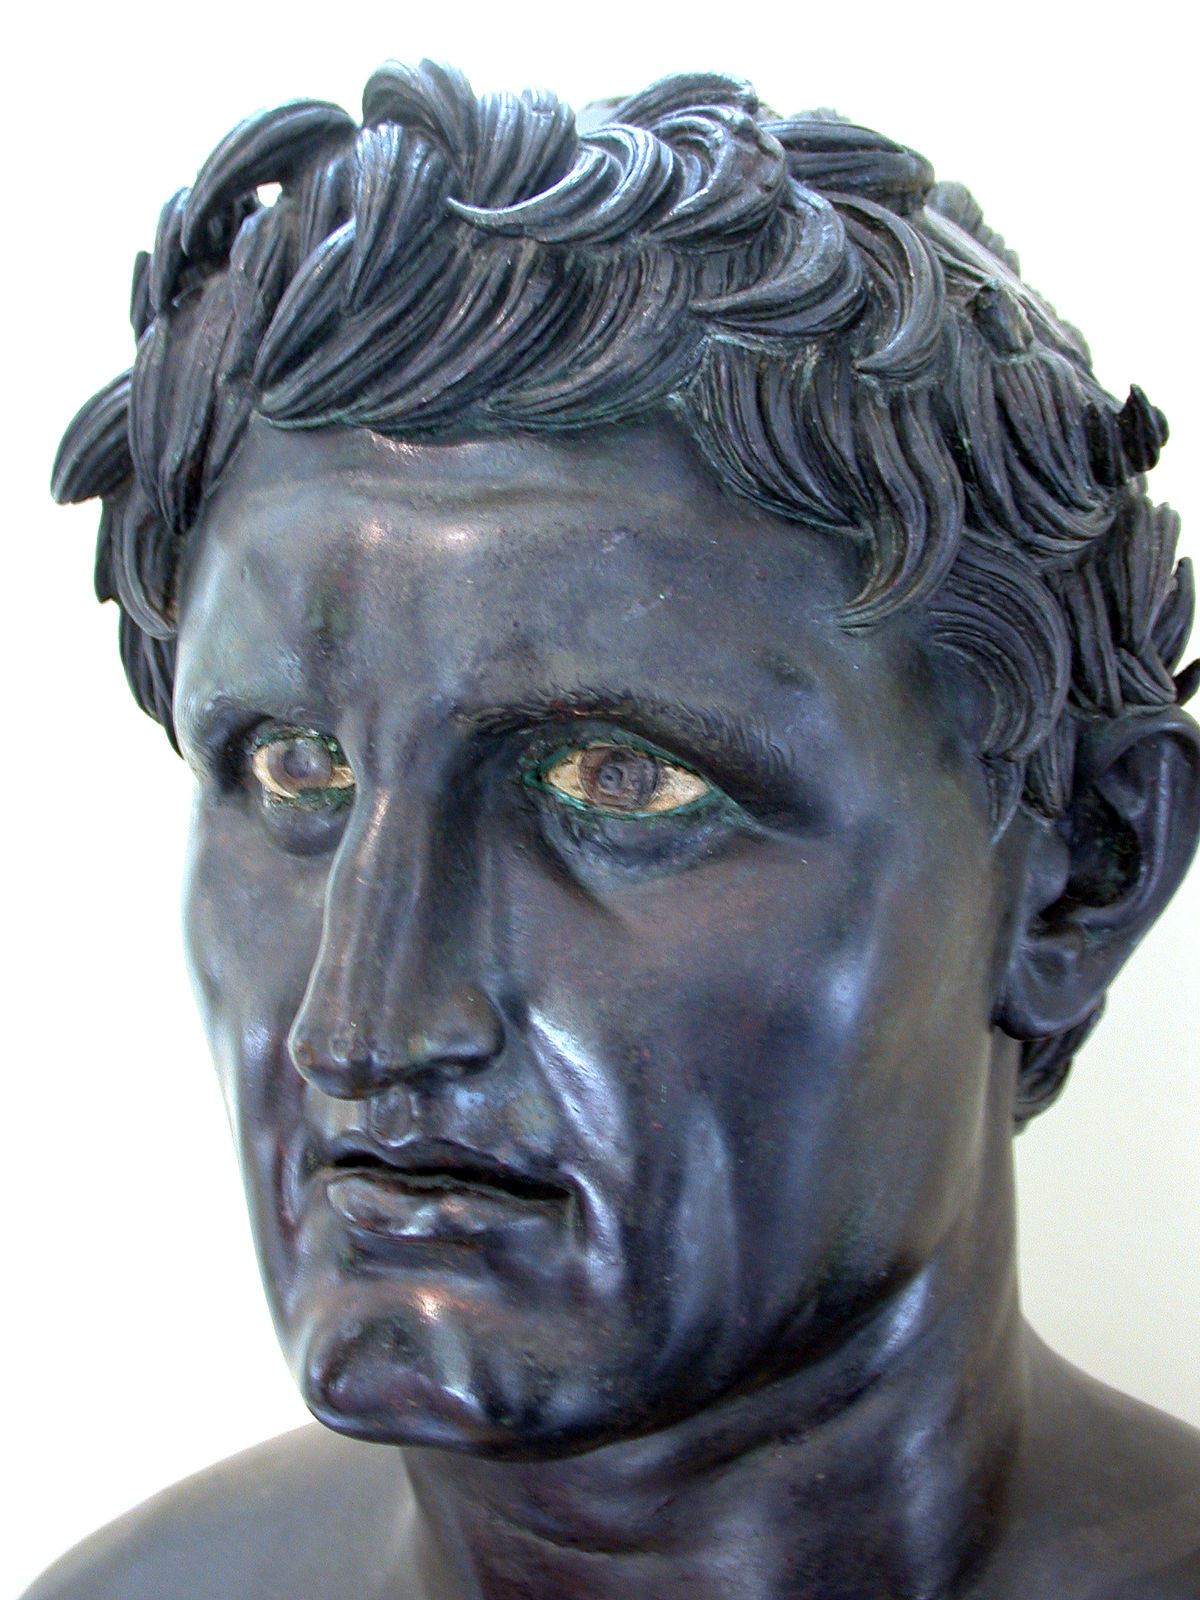 Seleukos I